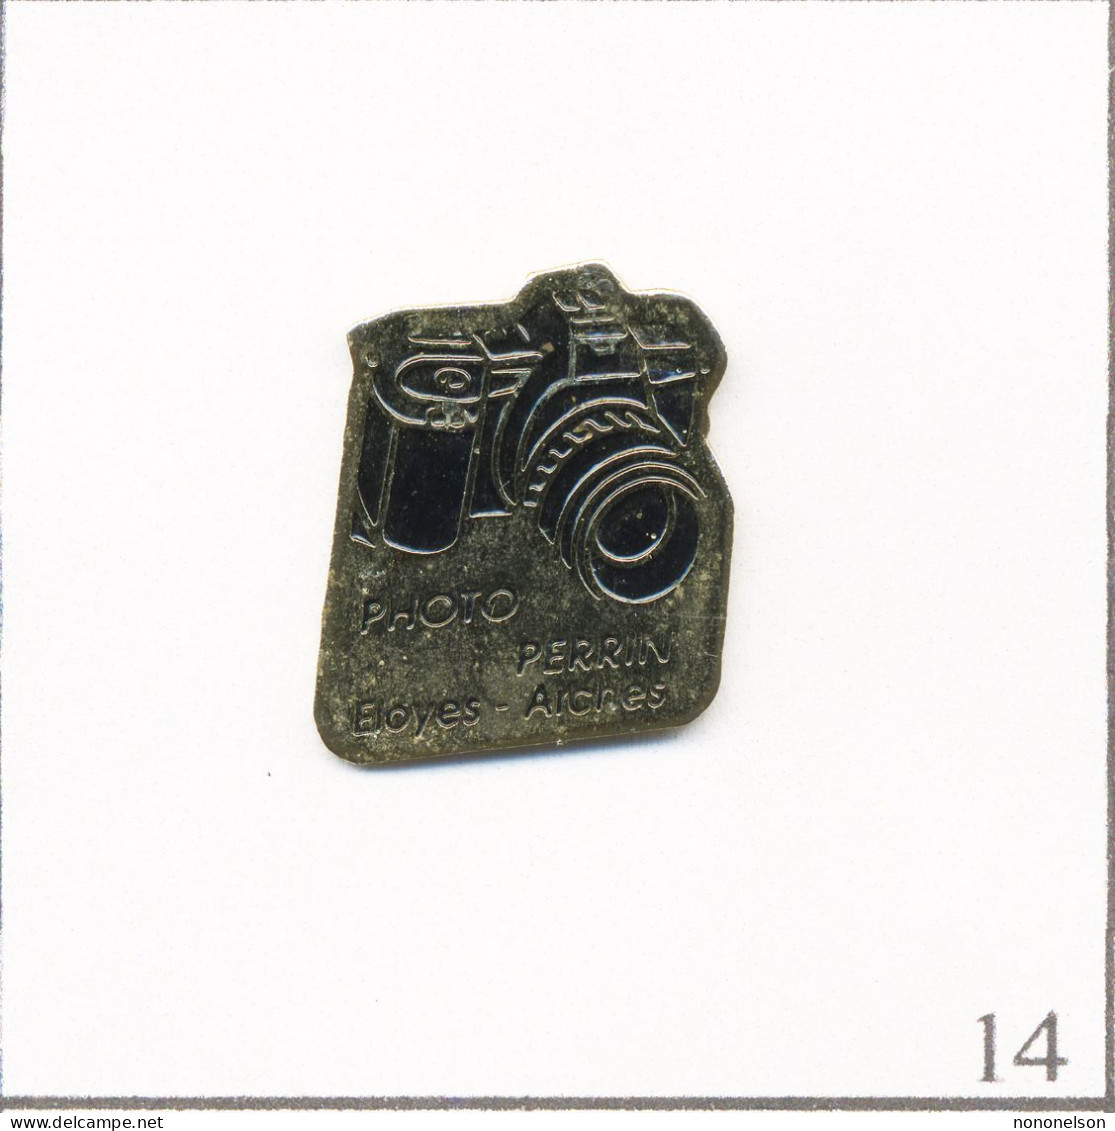 Pin's Photographie - Magasin / Photo Perrin à Eloyes & Arches (88). Estampillé PubliNancy. Métal Peint. T667-14 - Fotografie